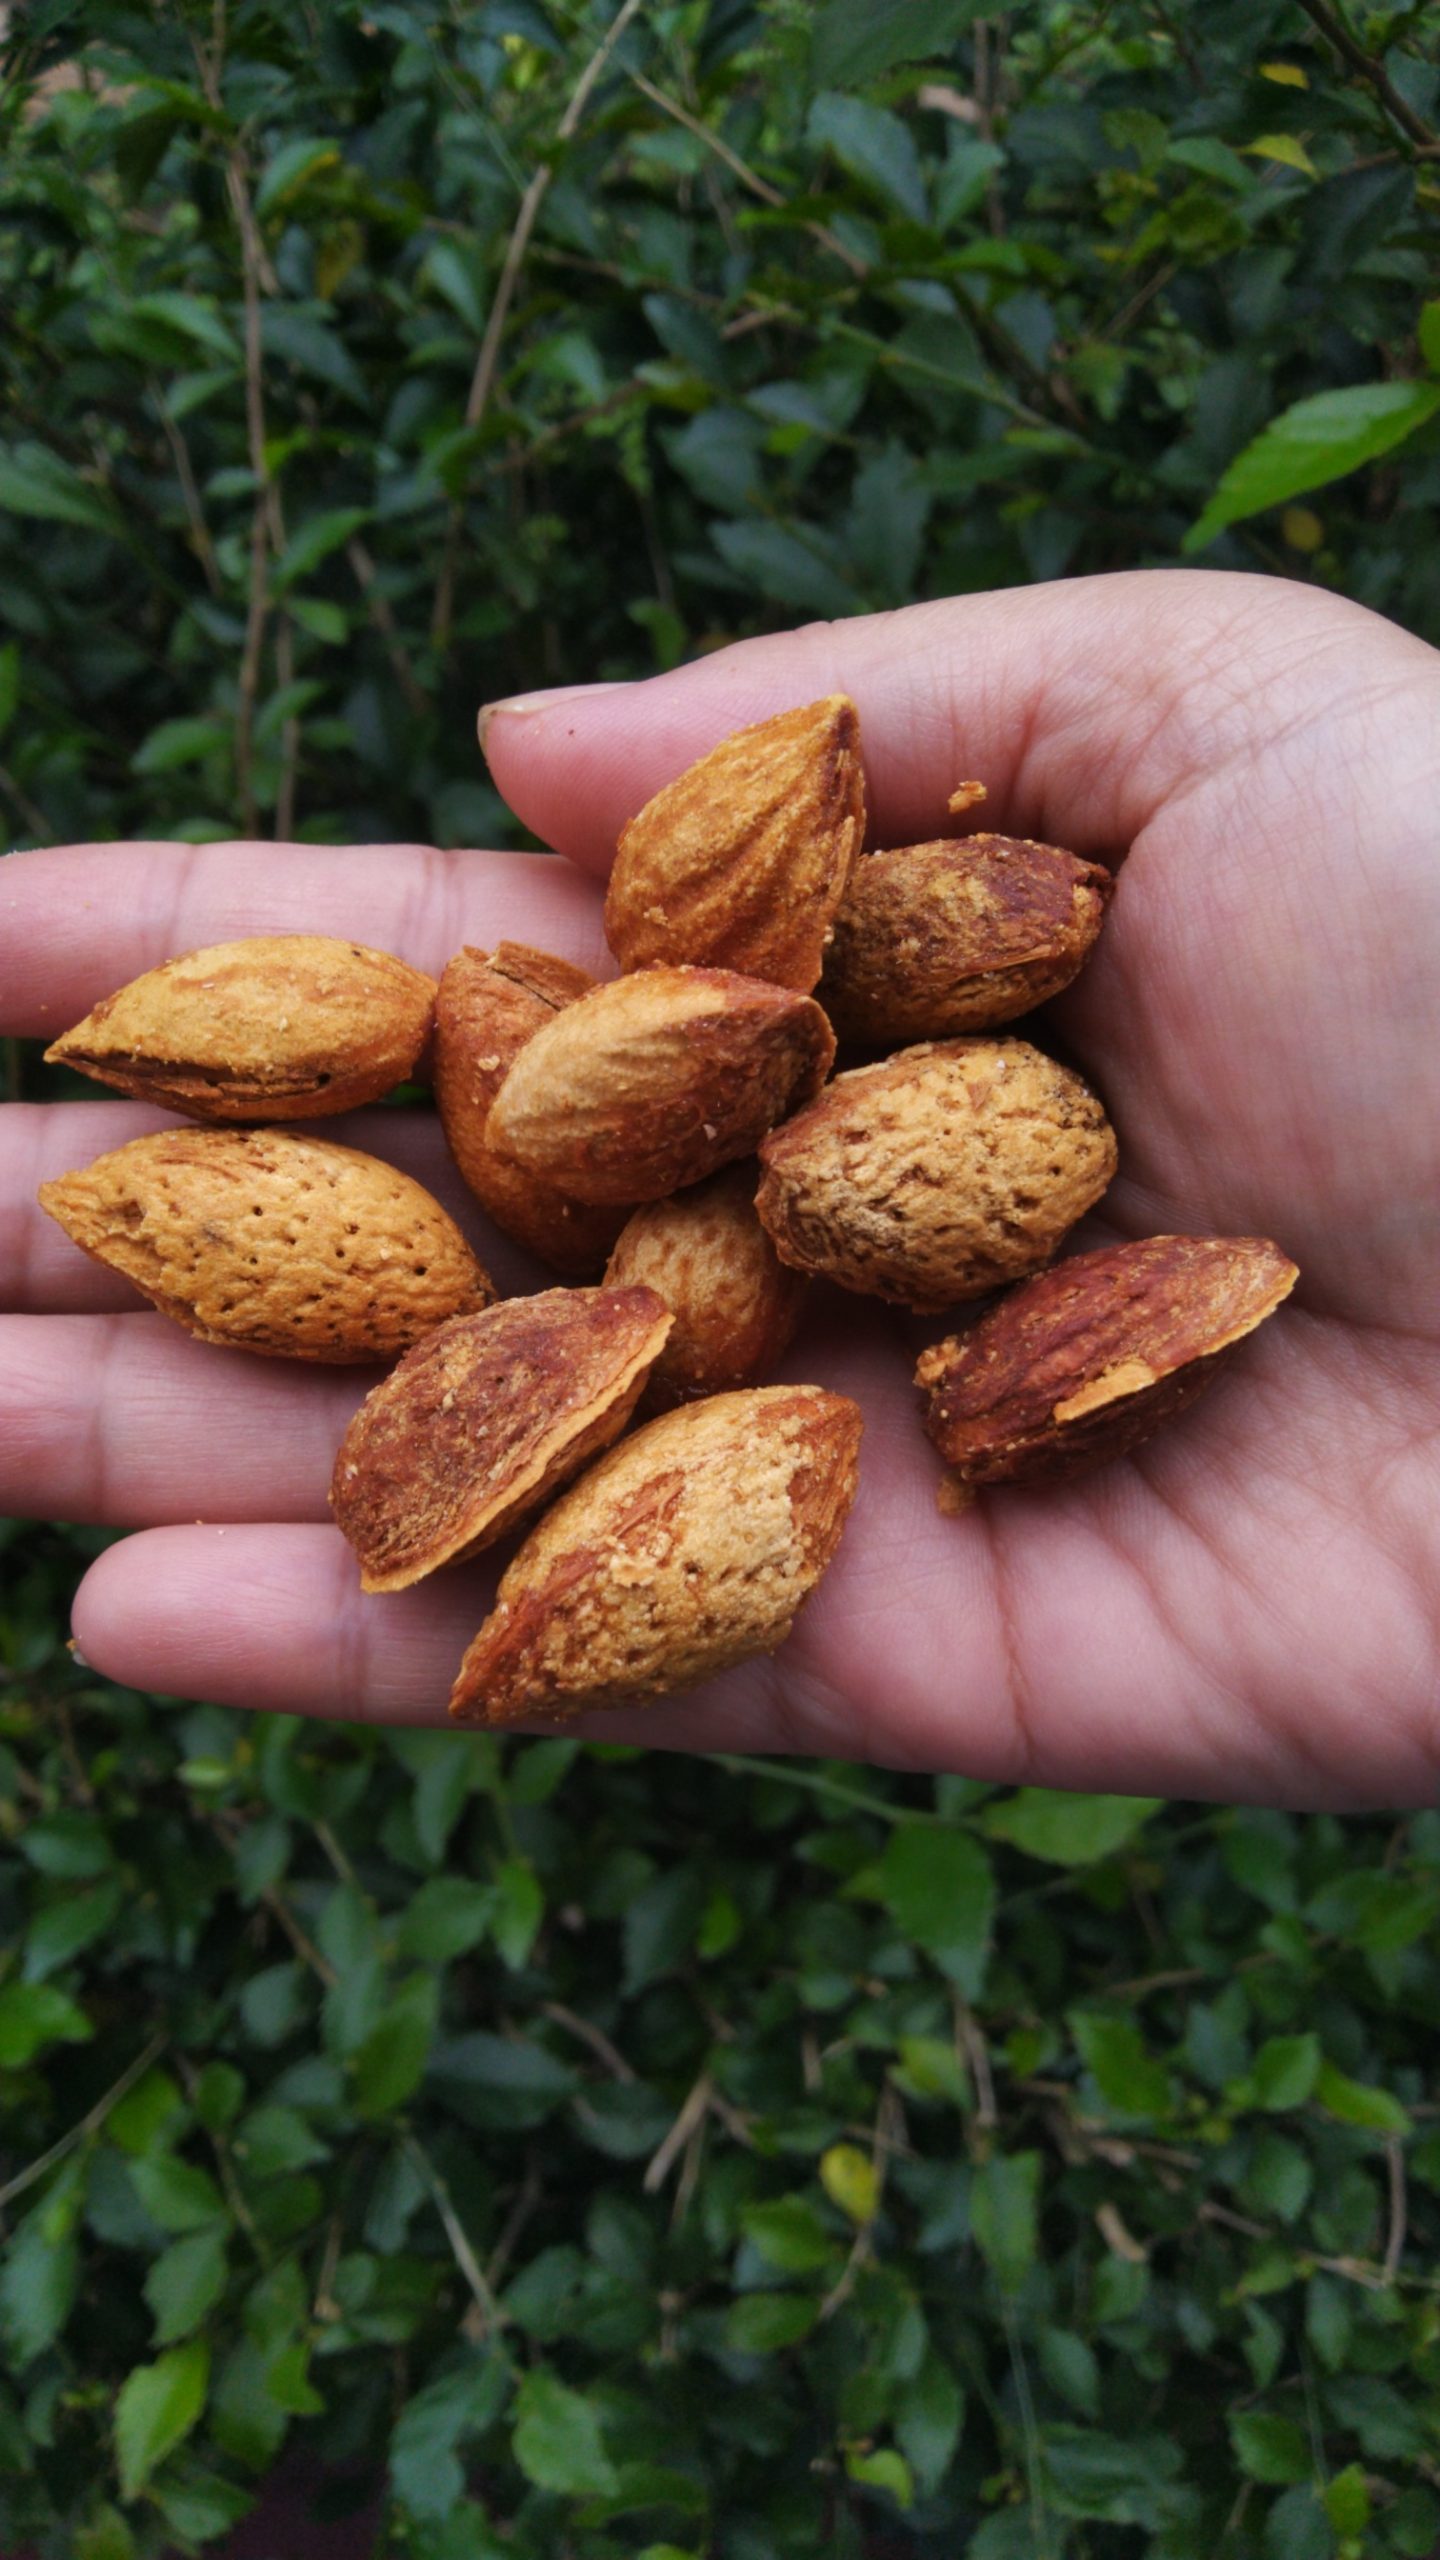 Manfaat Baik Kacang Almond untuk Perawatan Kulit